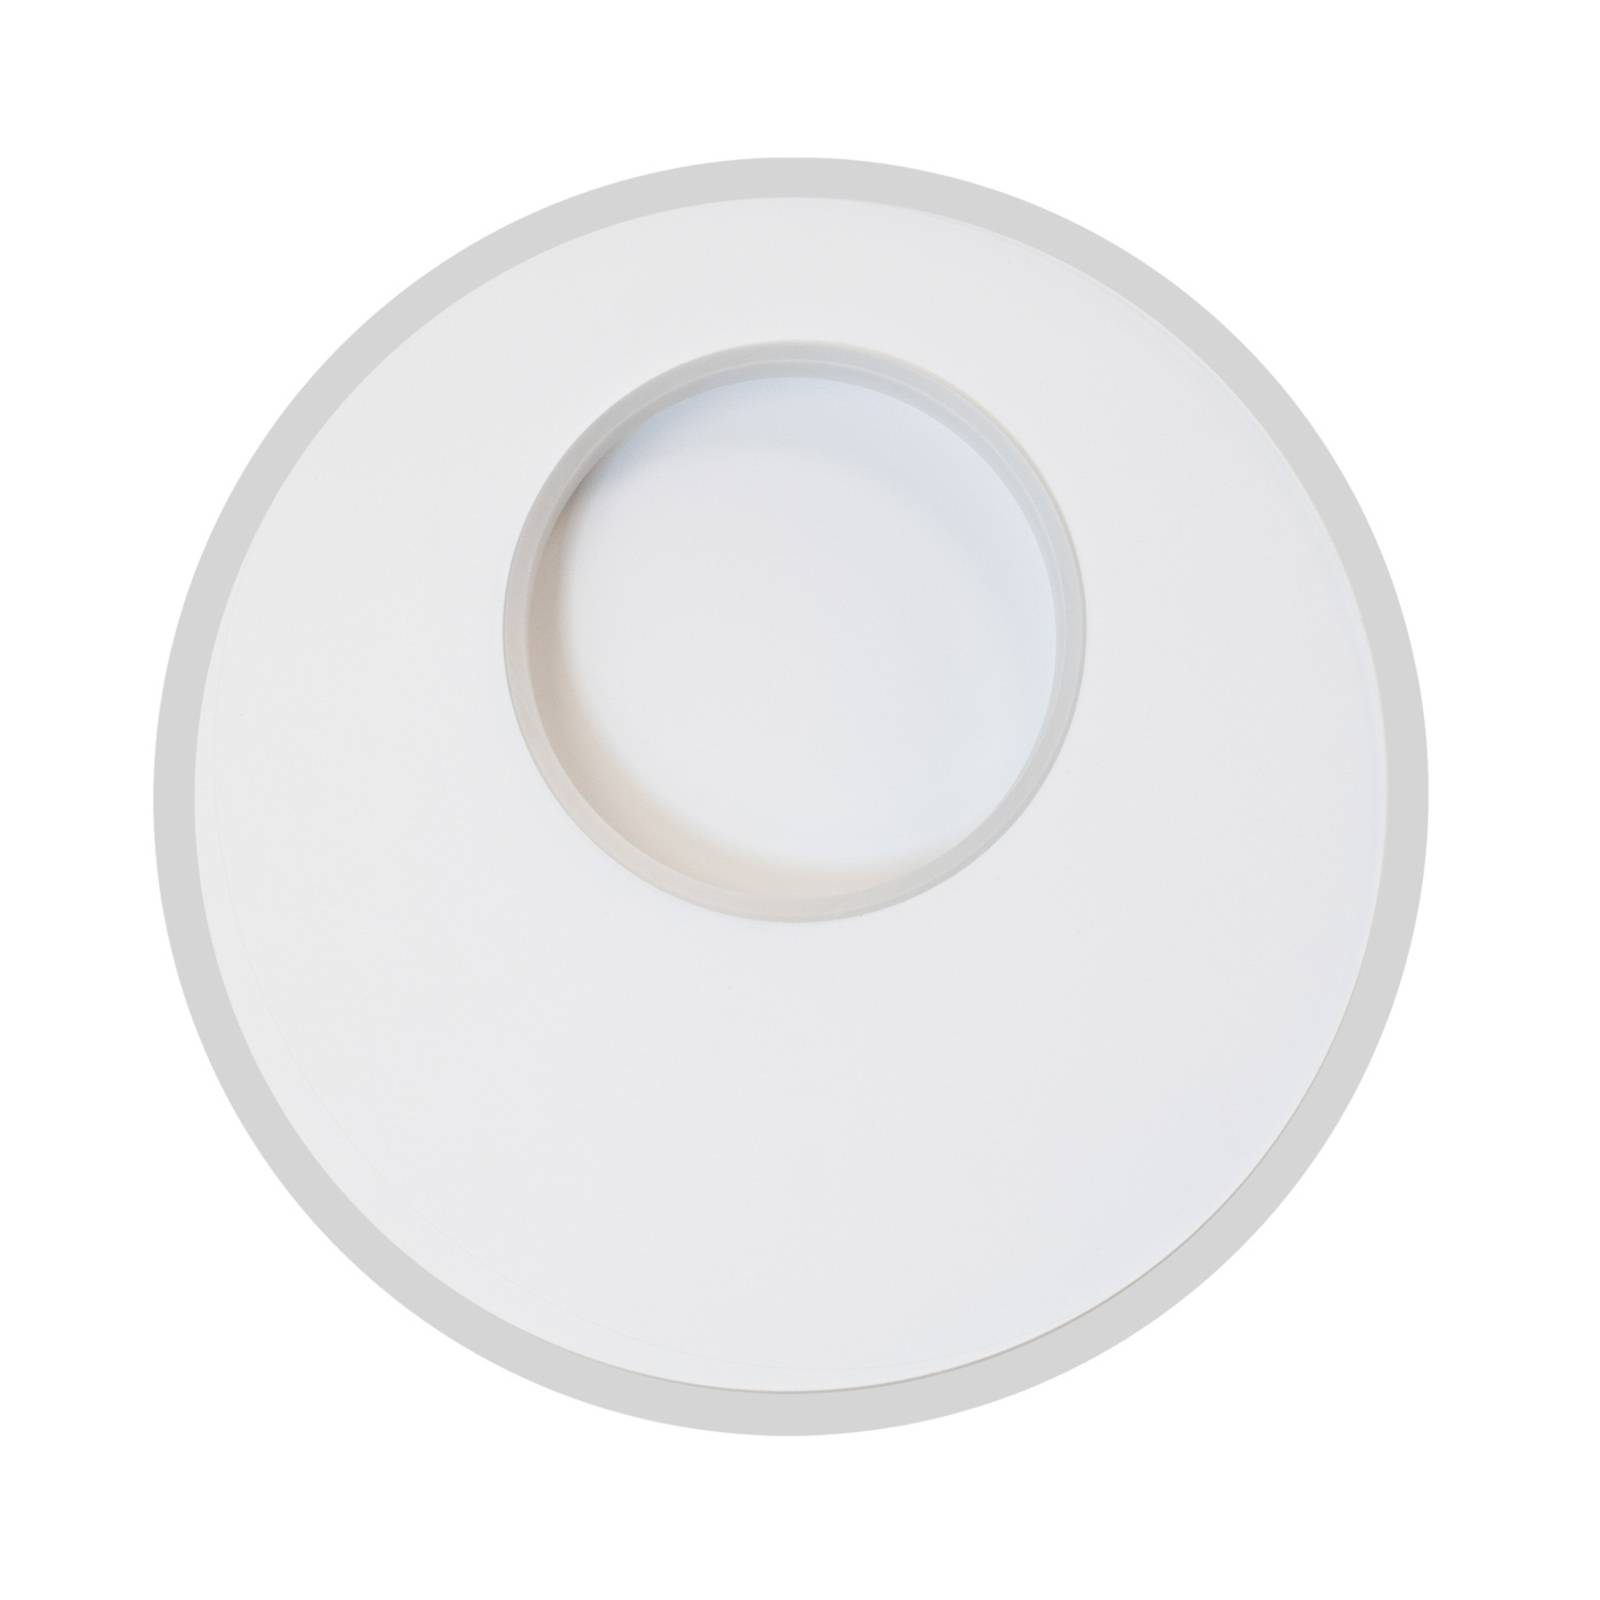 LED plafondlamp krater wit tunable white dimbaar